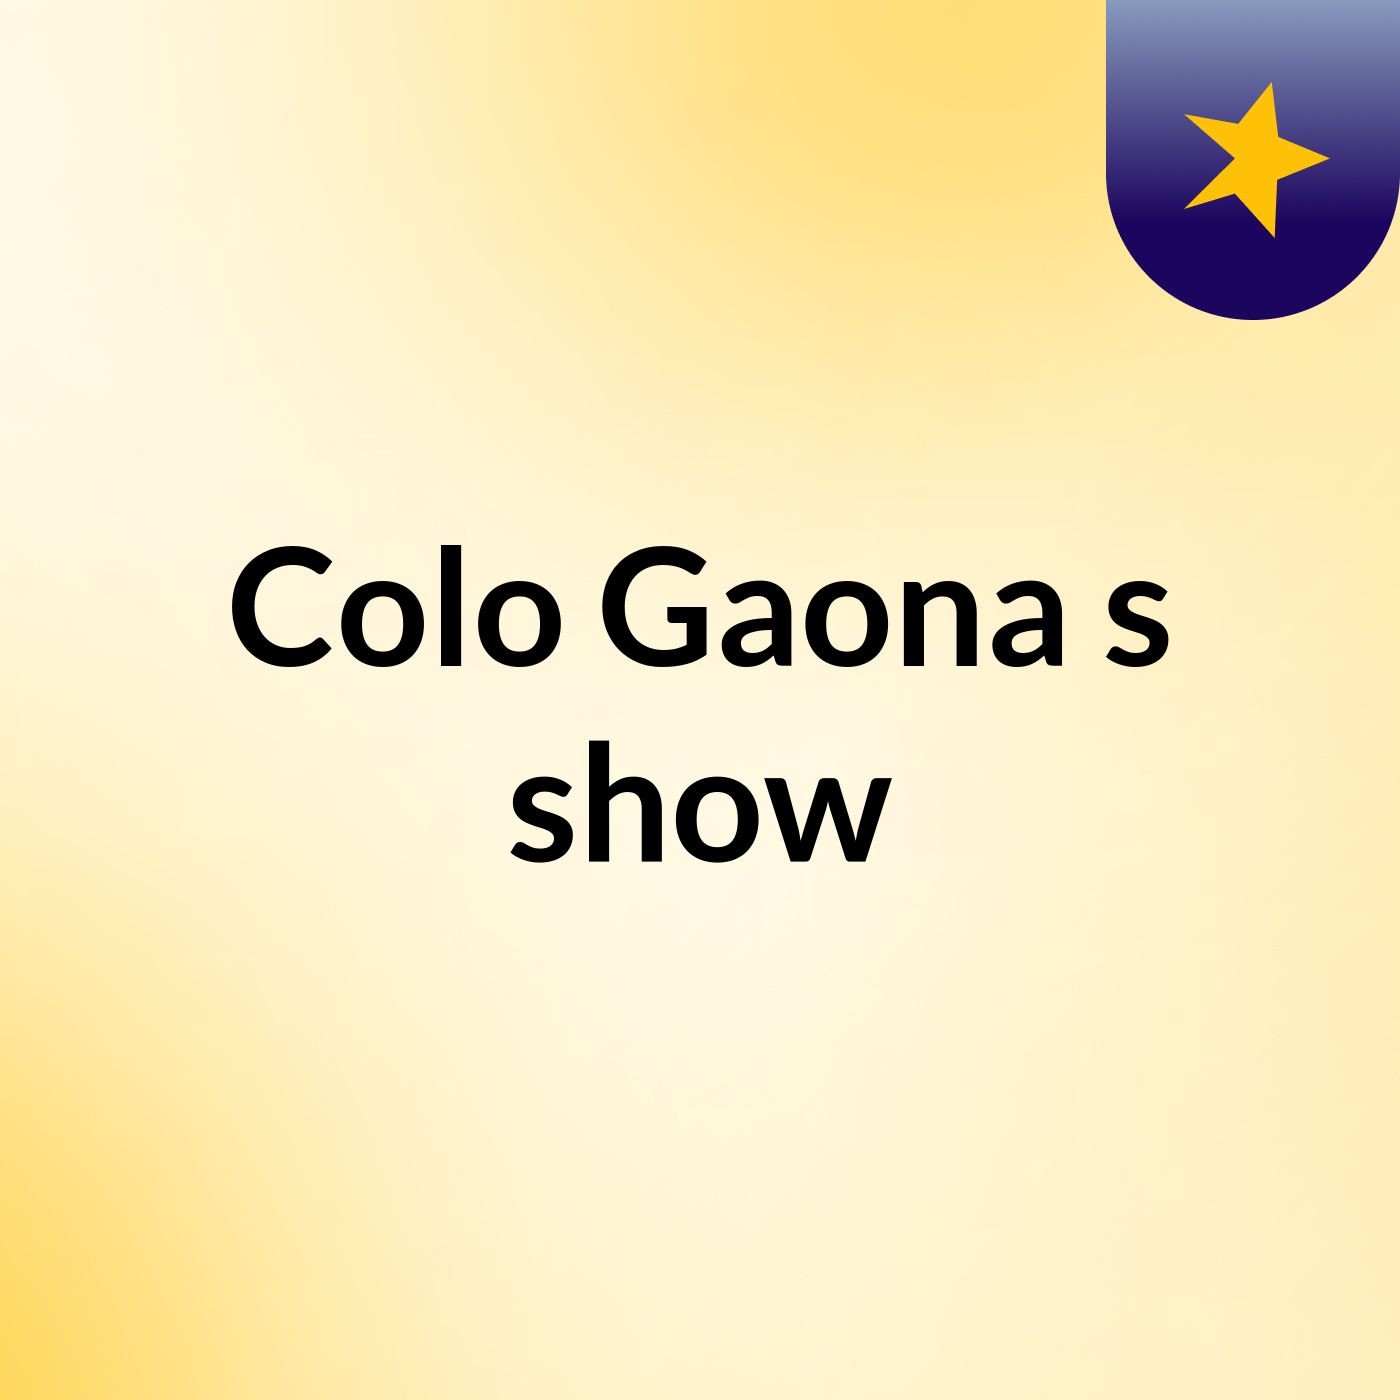 Colo Gaona's show